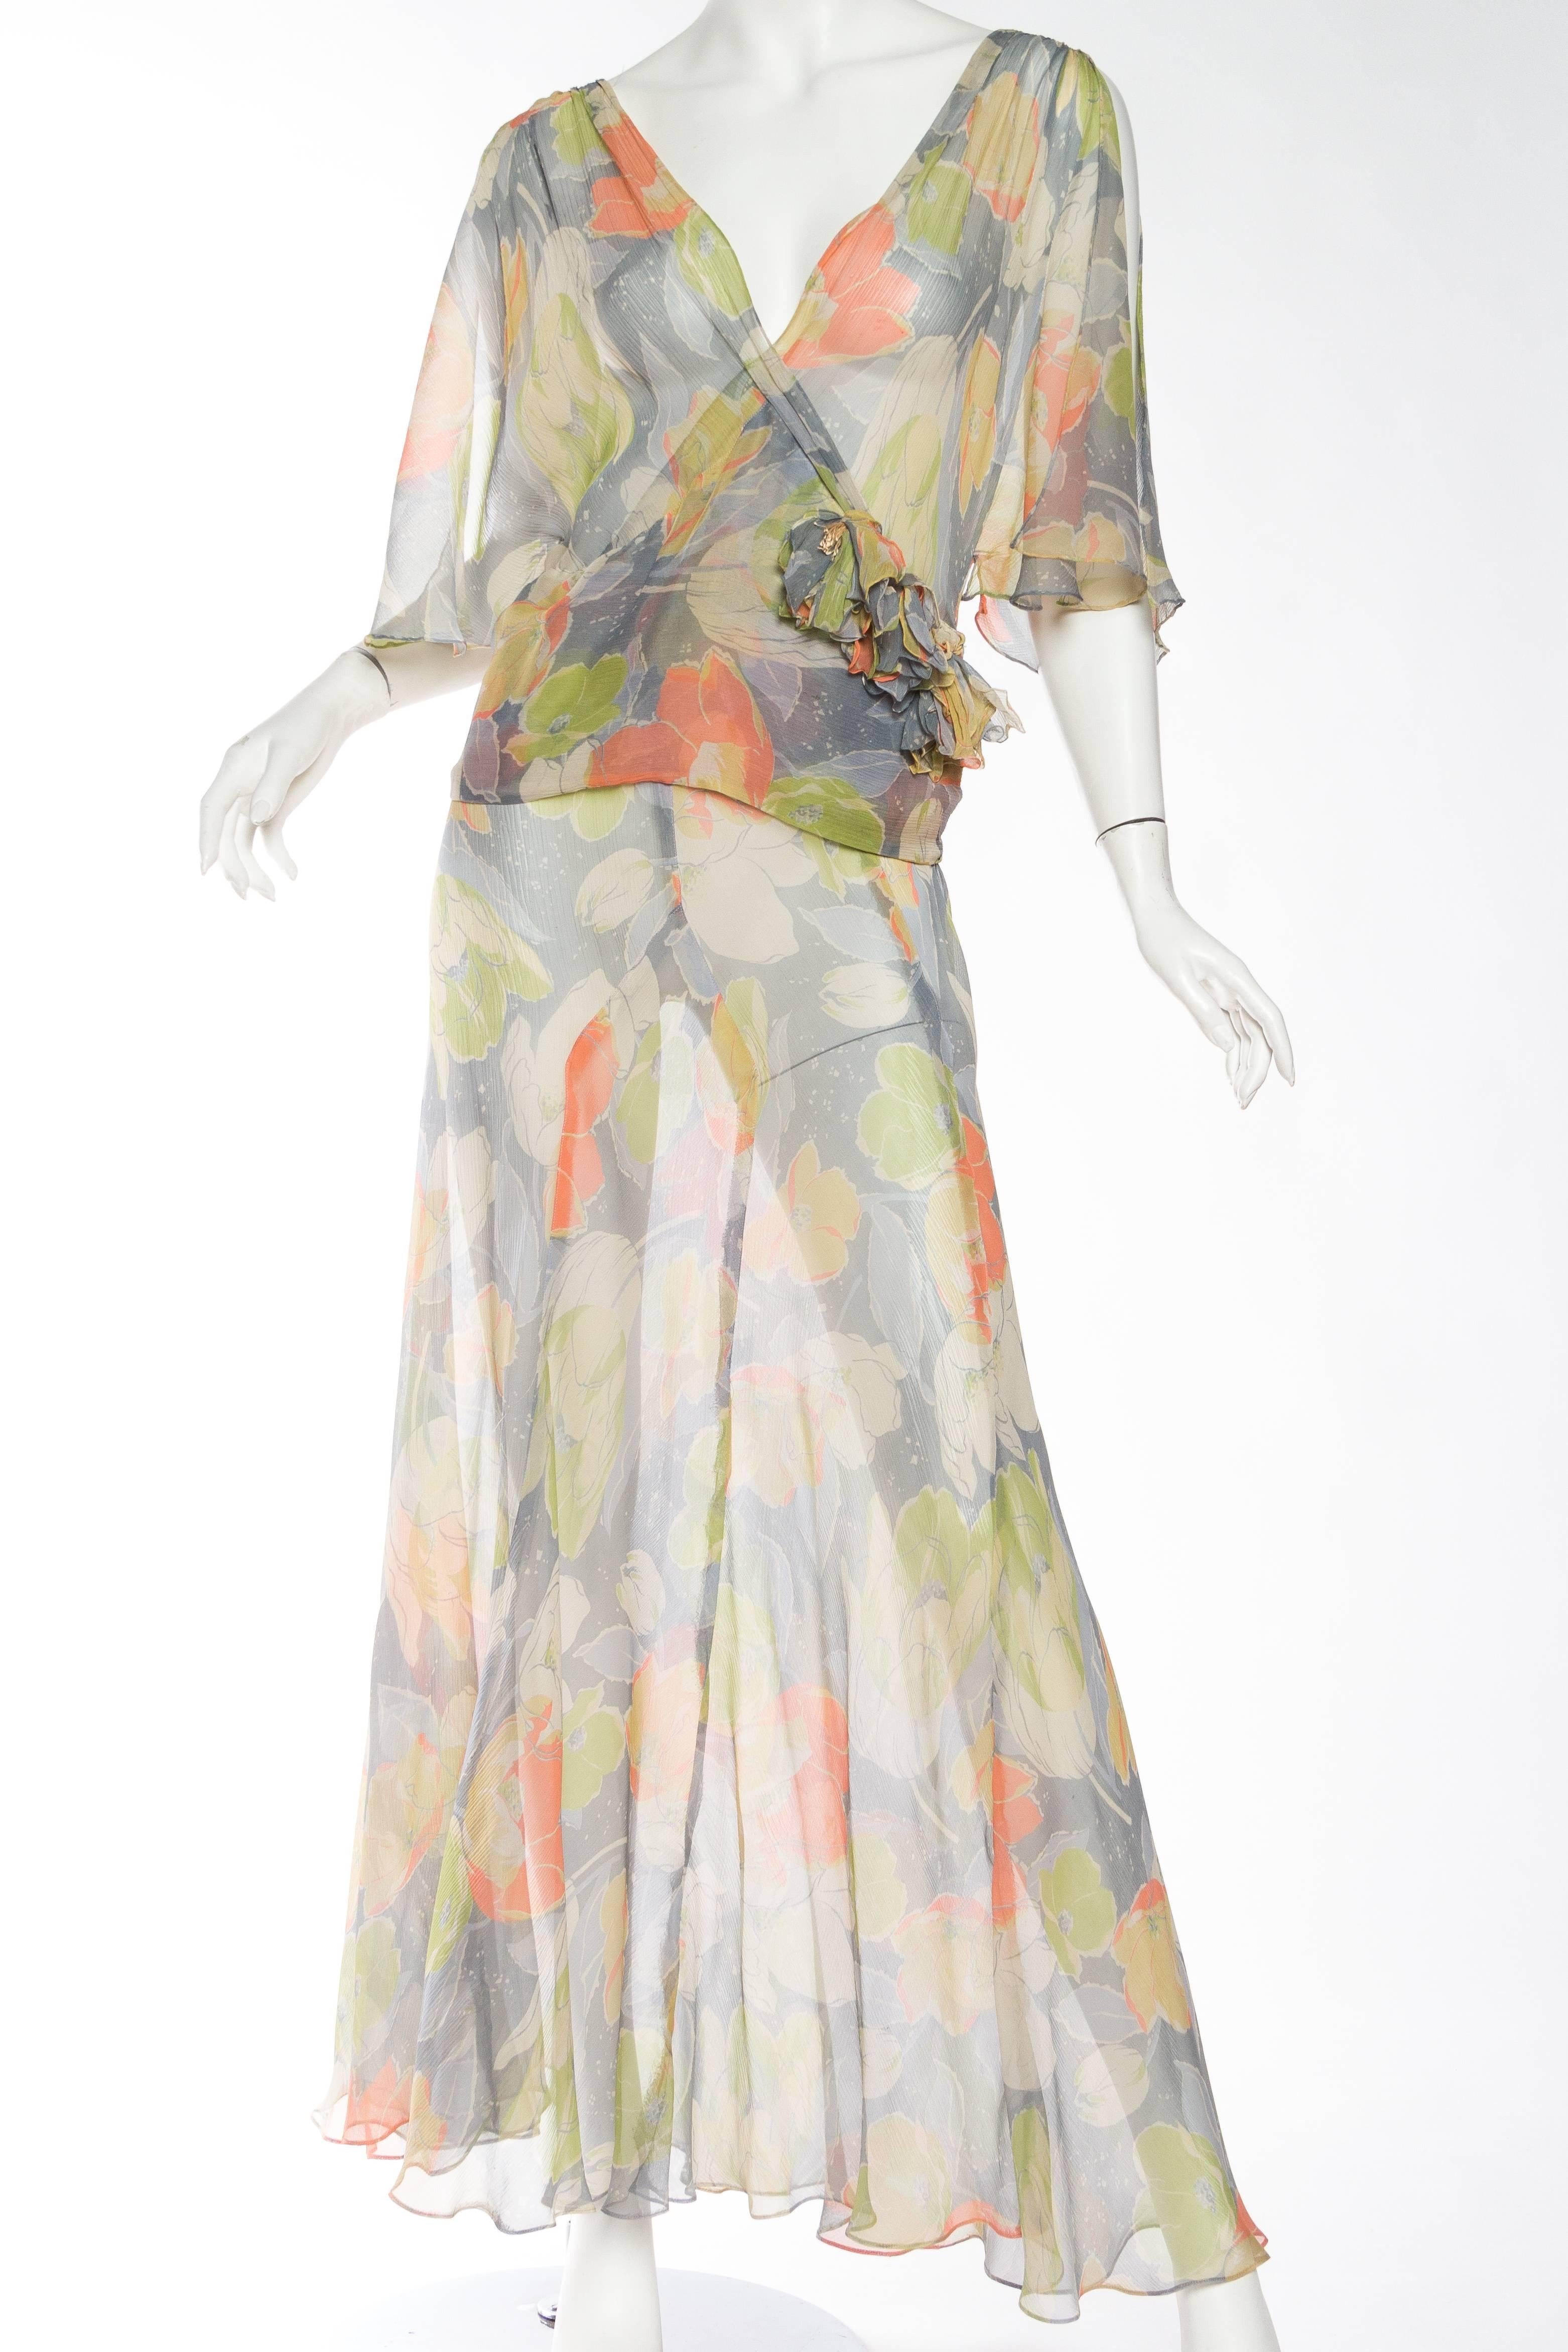 1930s chiffon dress